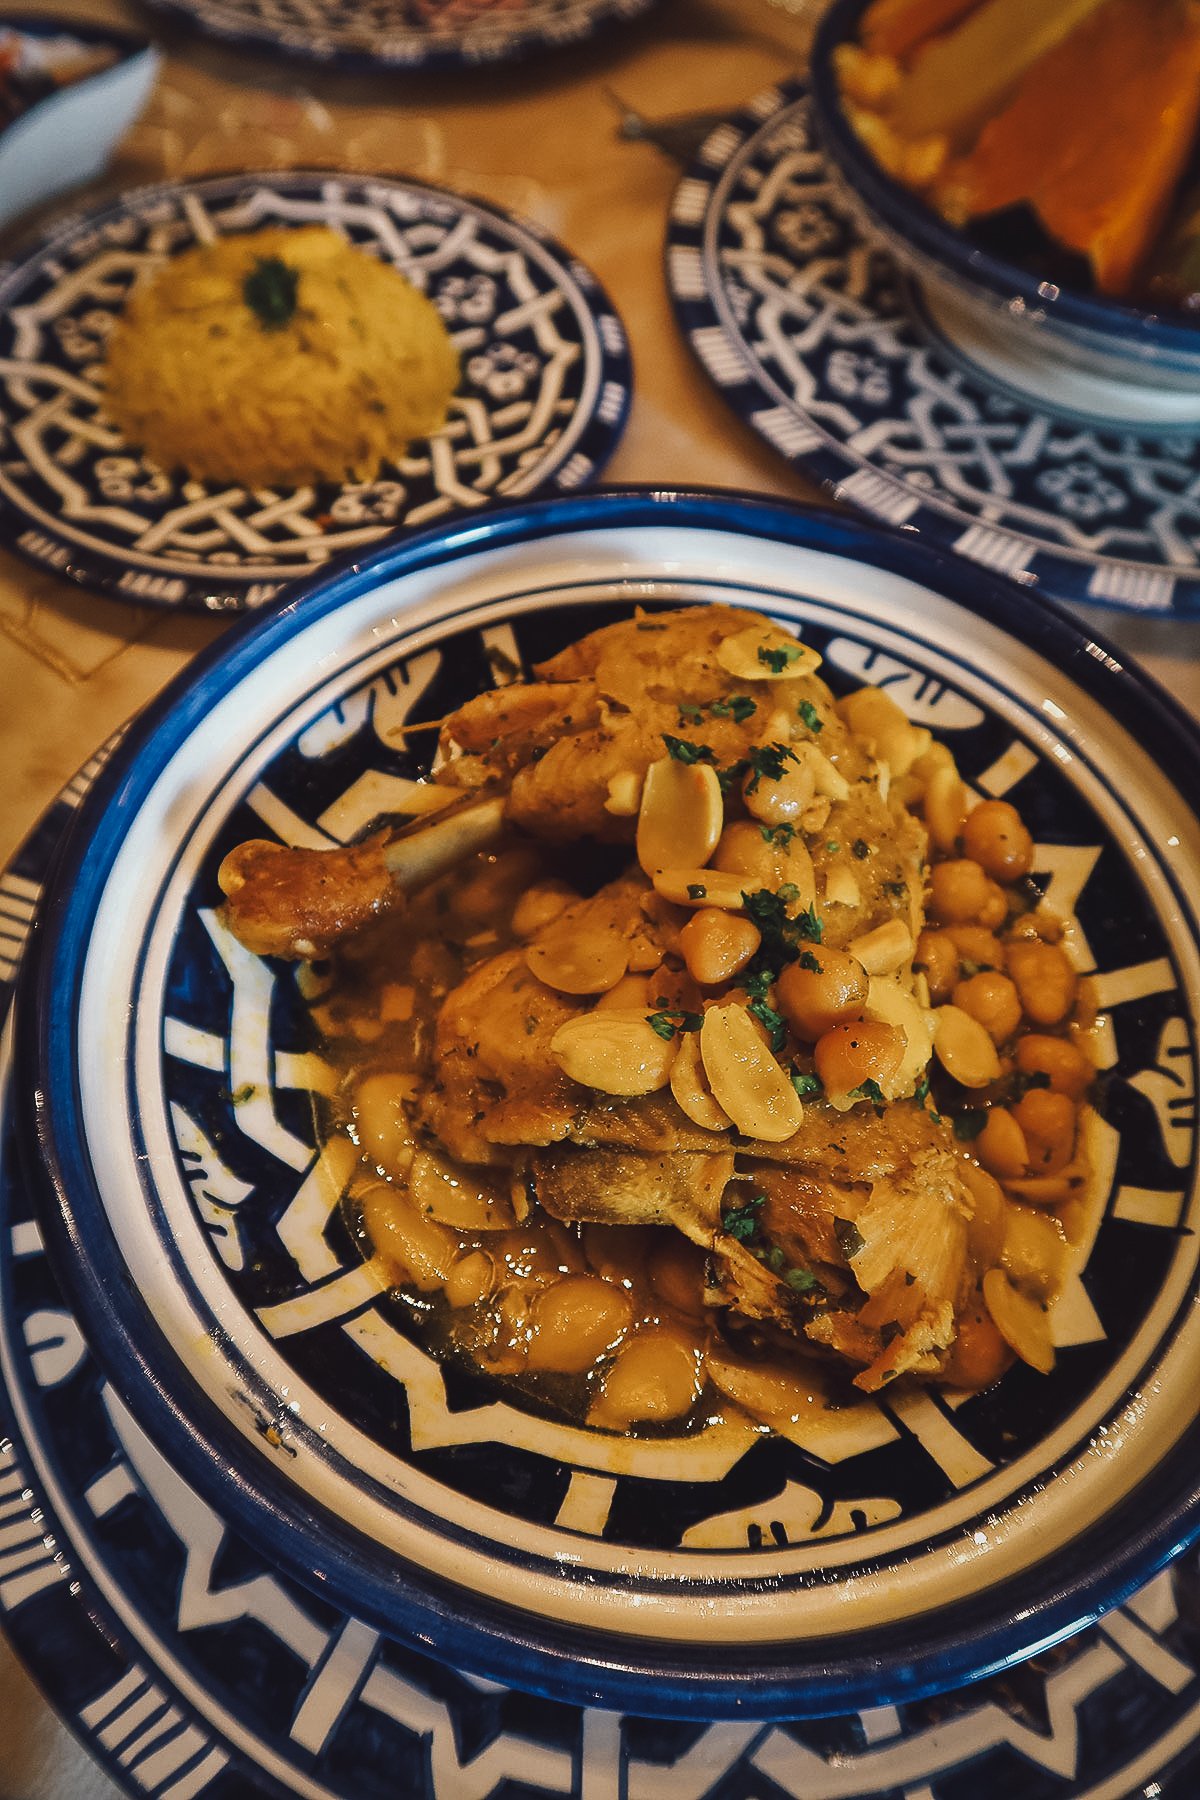 Chicken tagine at a restaurant in Fez